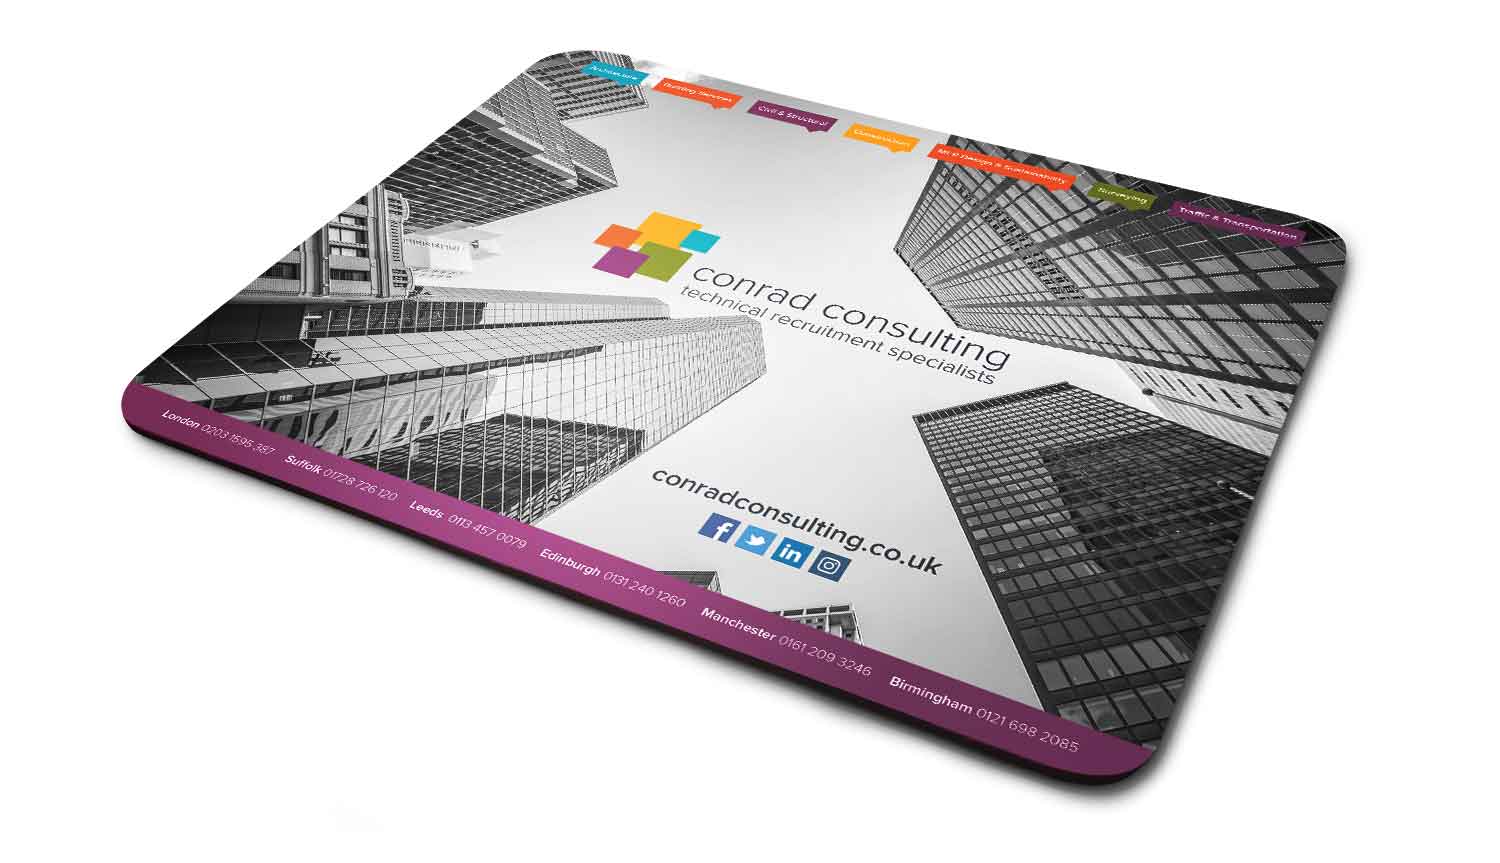 Conrad Consulting mouse pad design